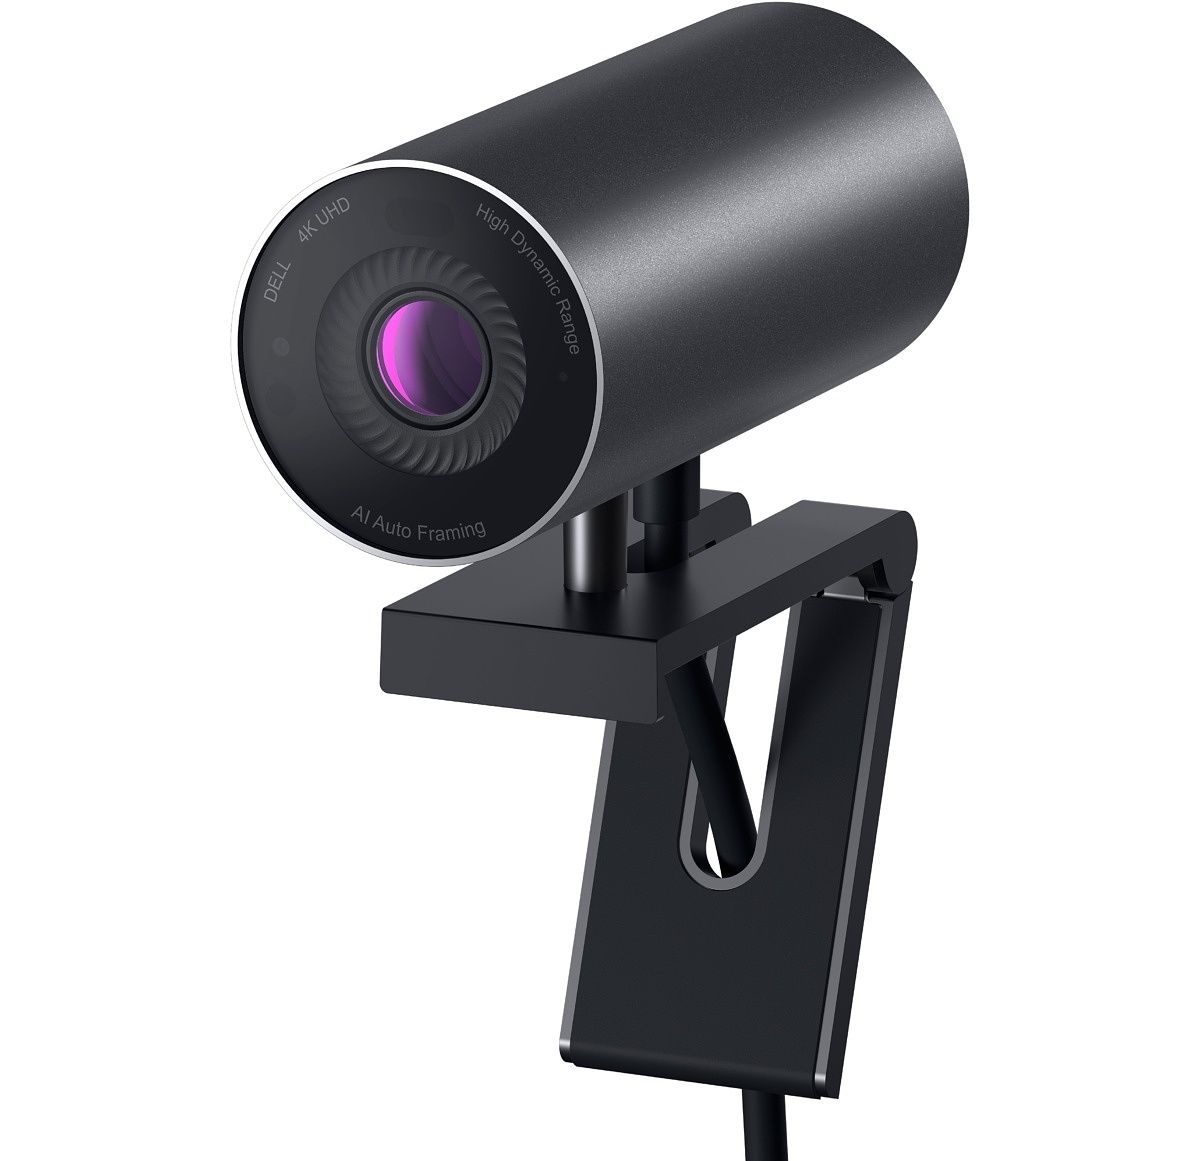 De XPS 17 heeft een behoorlijk slechte webcam, dus je wilt een betere camera als je van plan bent om videogesprekken te voeren of online te streamen.  De Dell UltraSharp is mogelijk de beste webcam op de markt, met een 4K Sony STARVIS-sensor voor weinig licht, autofocus en andere geweldige functies.